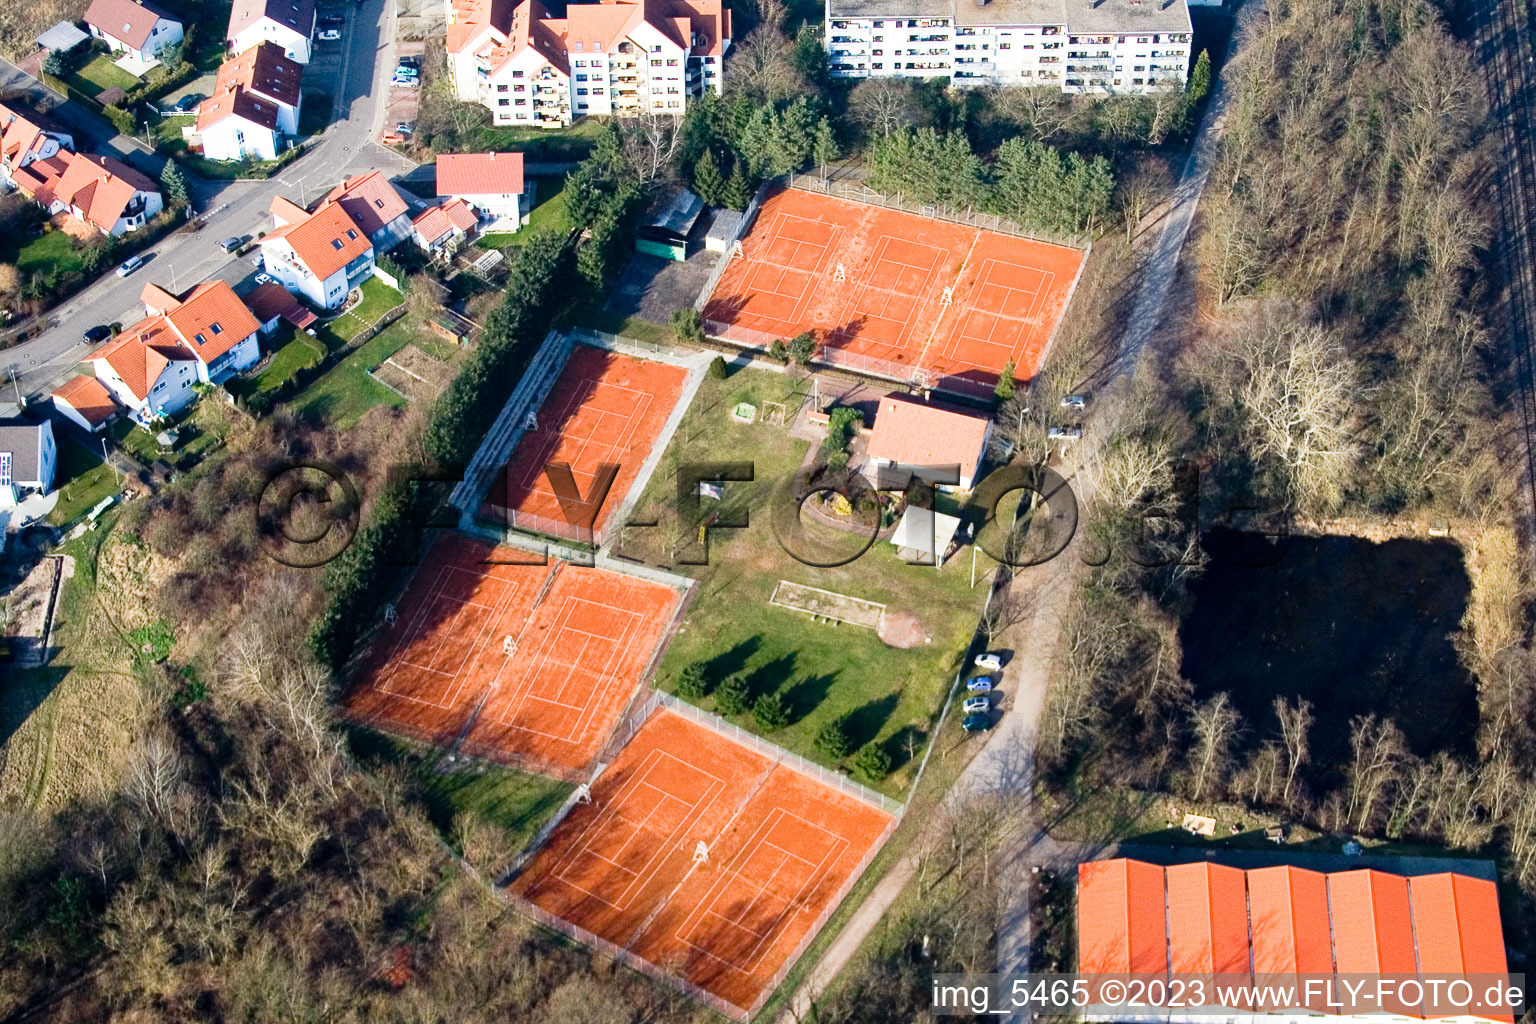 Photographie aérienne de Club de tennis à Jockgrim dans le département Rhénanie-Palatinat, Allemagne